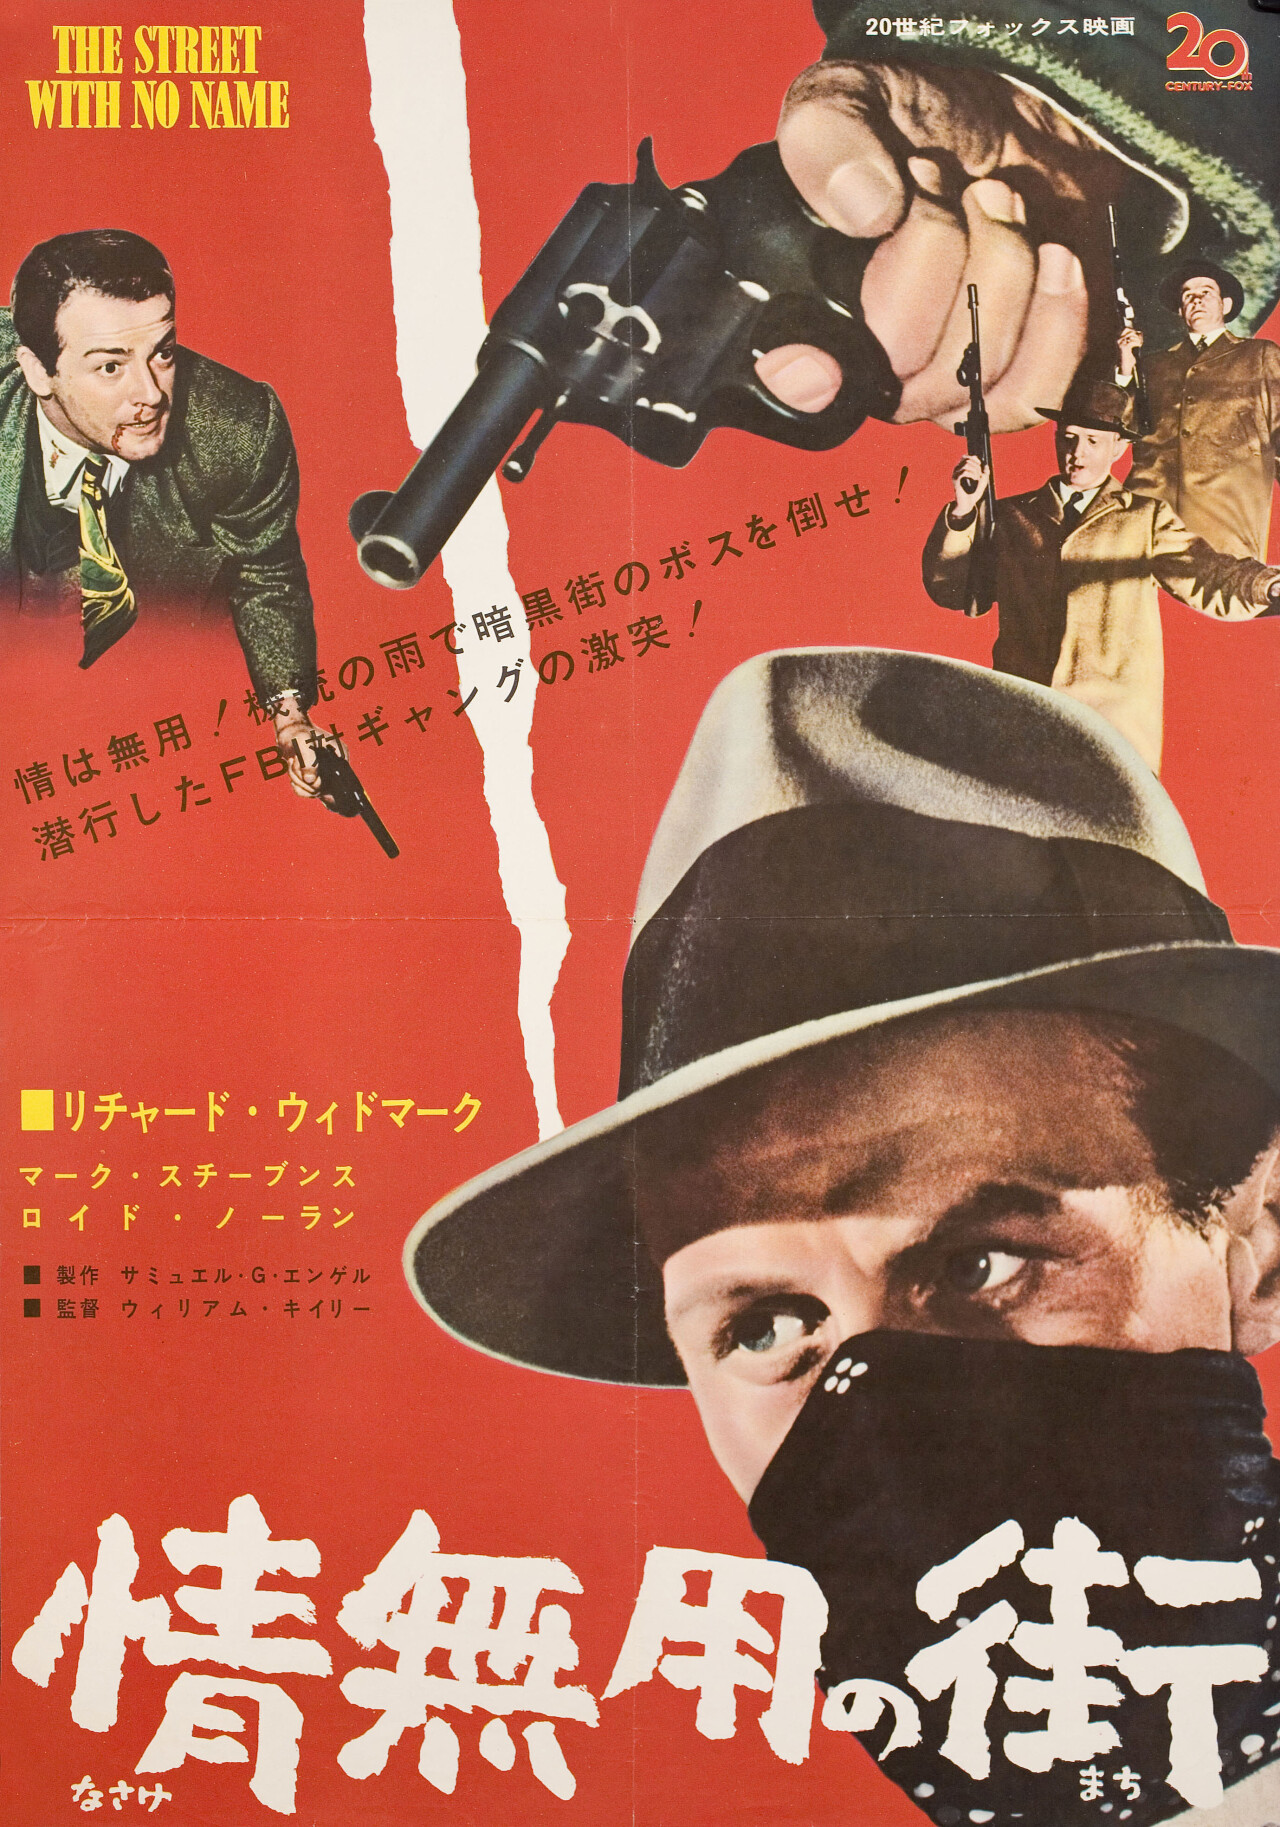 Улица без названия (The Street with No Name, 1948), режиссёр Уильям Кейли, японский постер к фильму (графический дизайн, 1948 год)